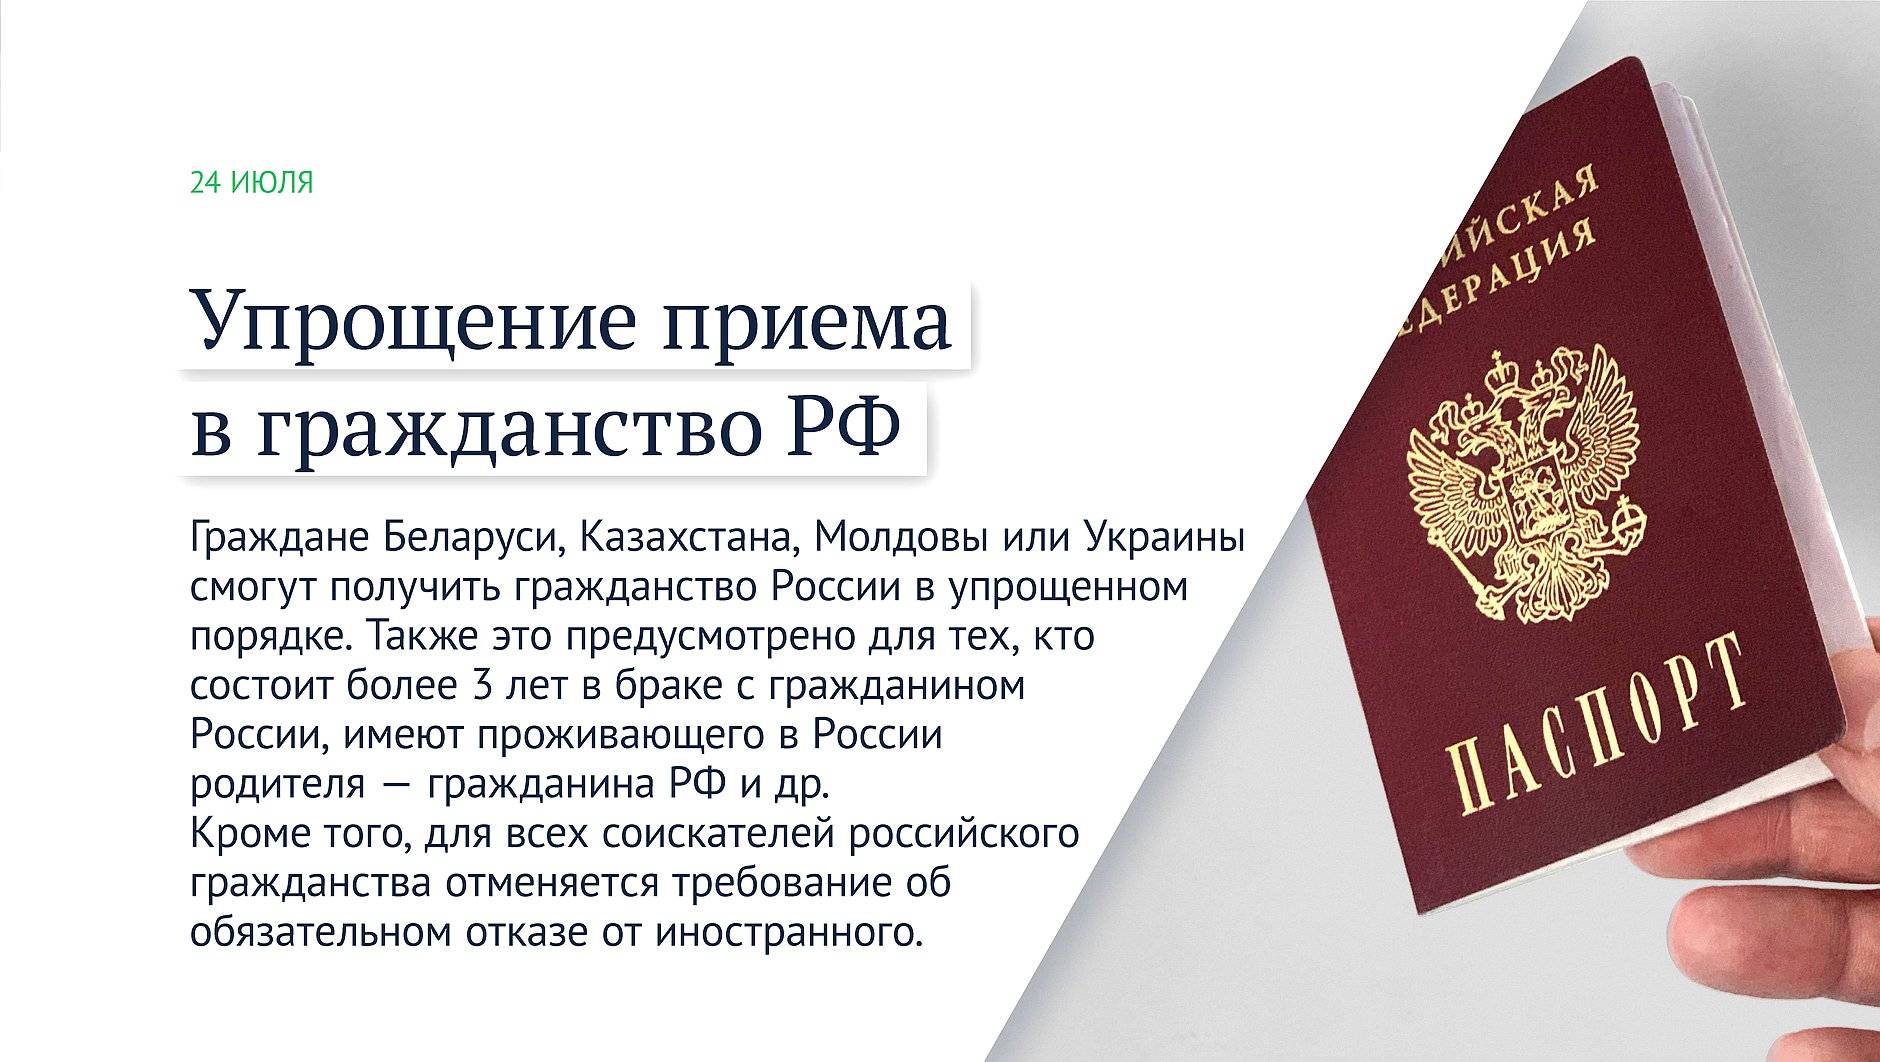 Как гражданину украины получить гражданство рф? способы и инструкция!